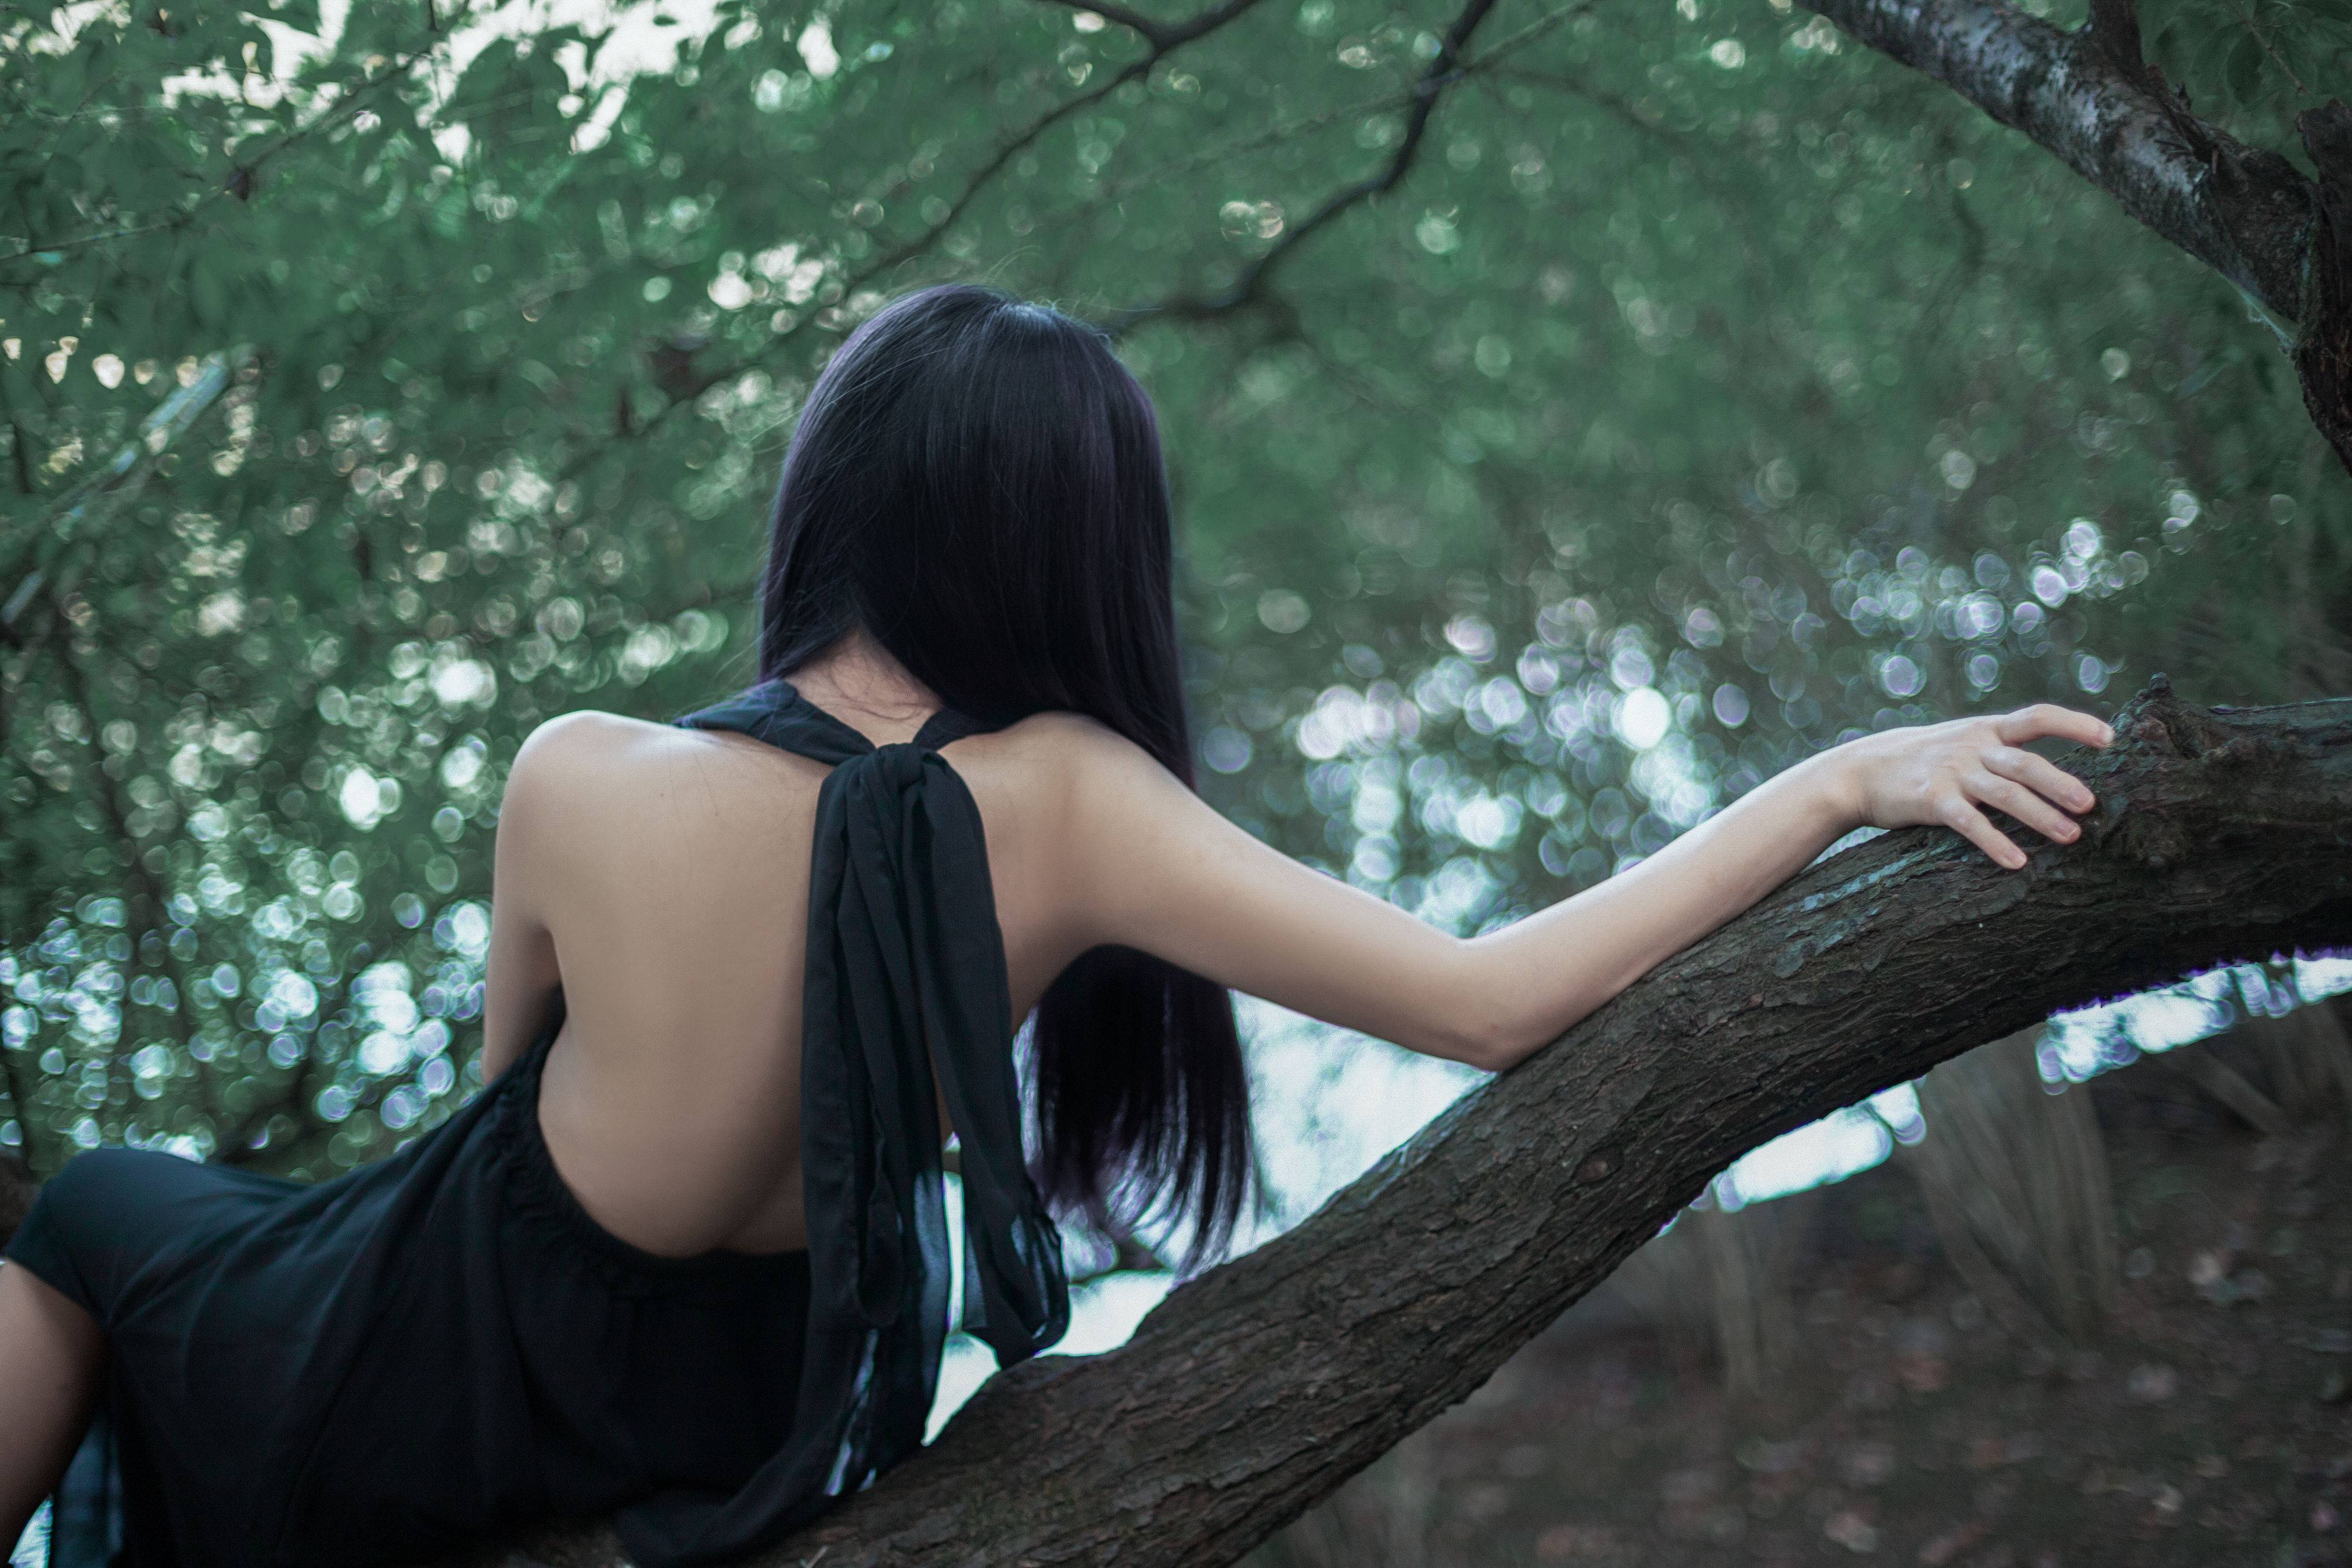 安静的绿 精美 意境 漂亮 优美 优雅 模特 树林 少女 情绪 绿色&YiTuYu艺图语-1